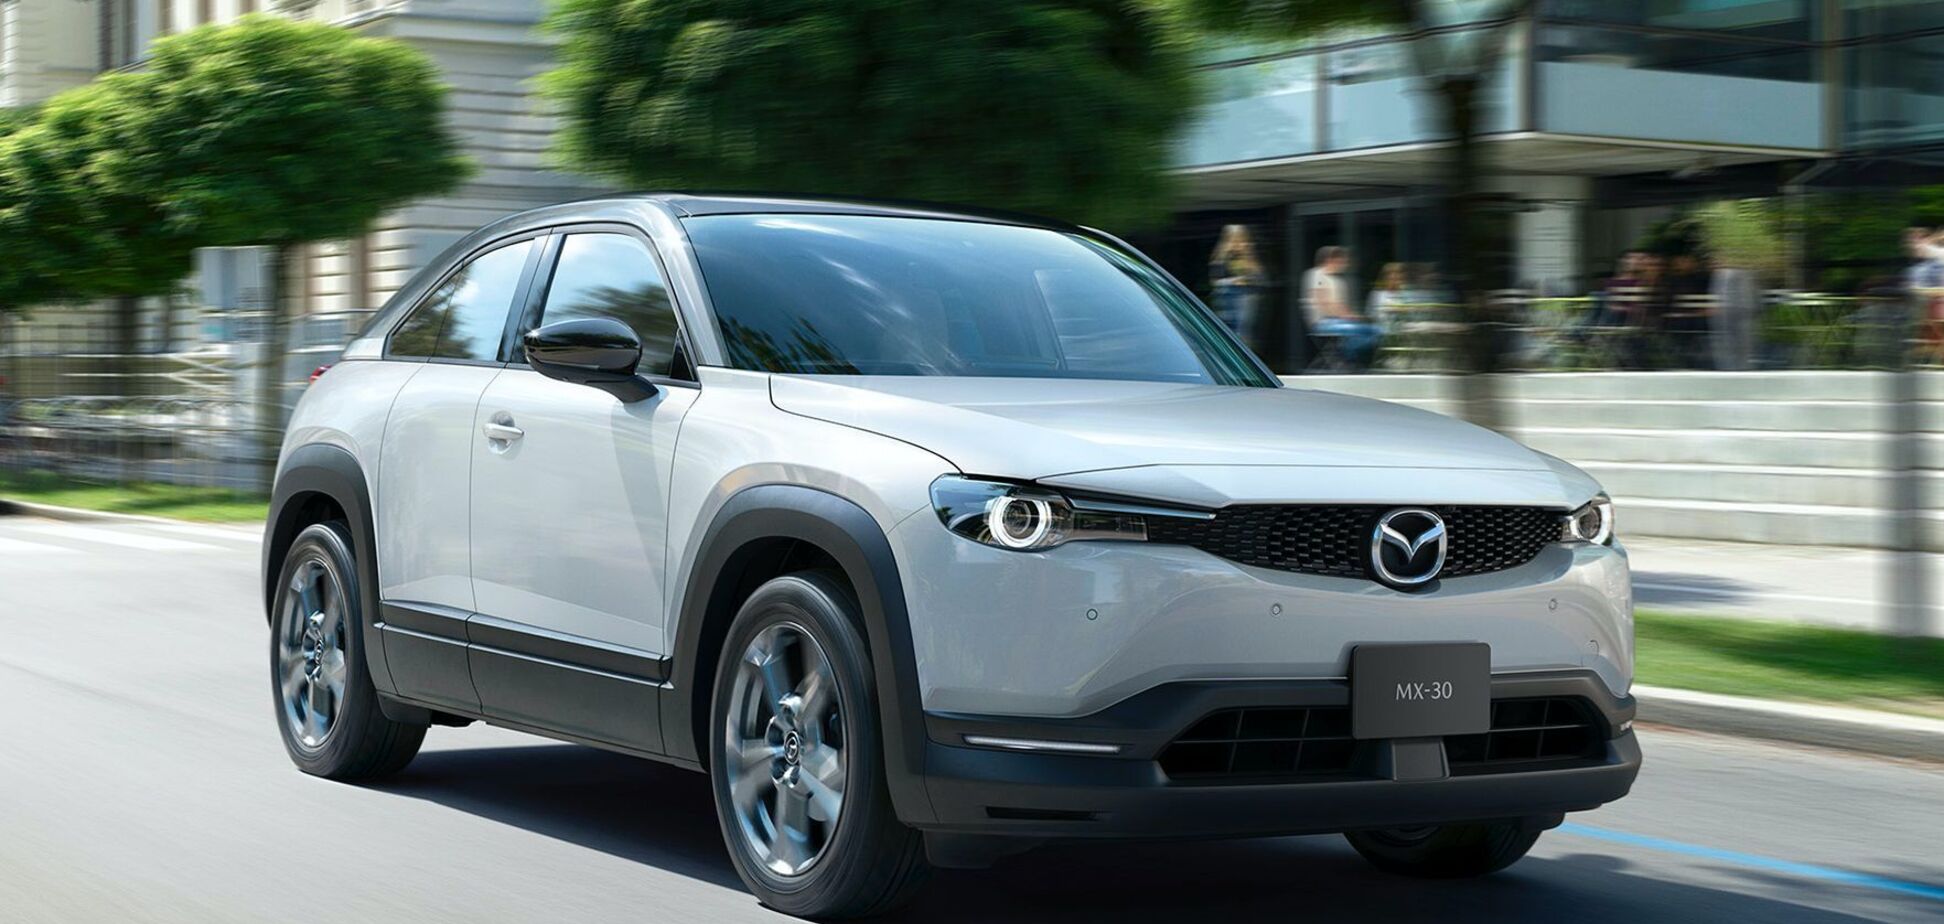 Mazda внезапно 'залила' в свой первый электромобиль бензин